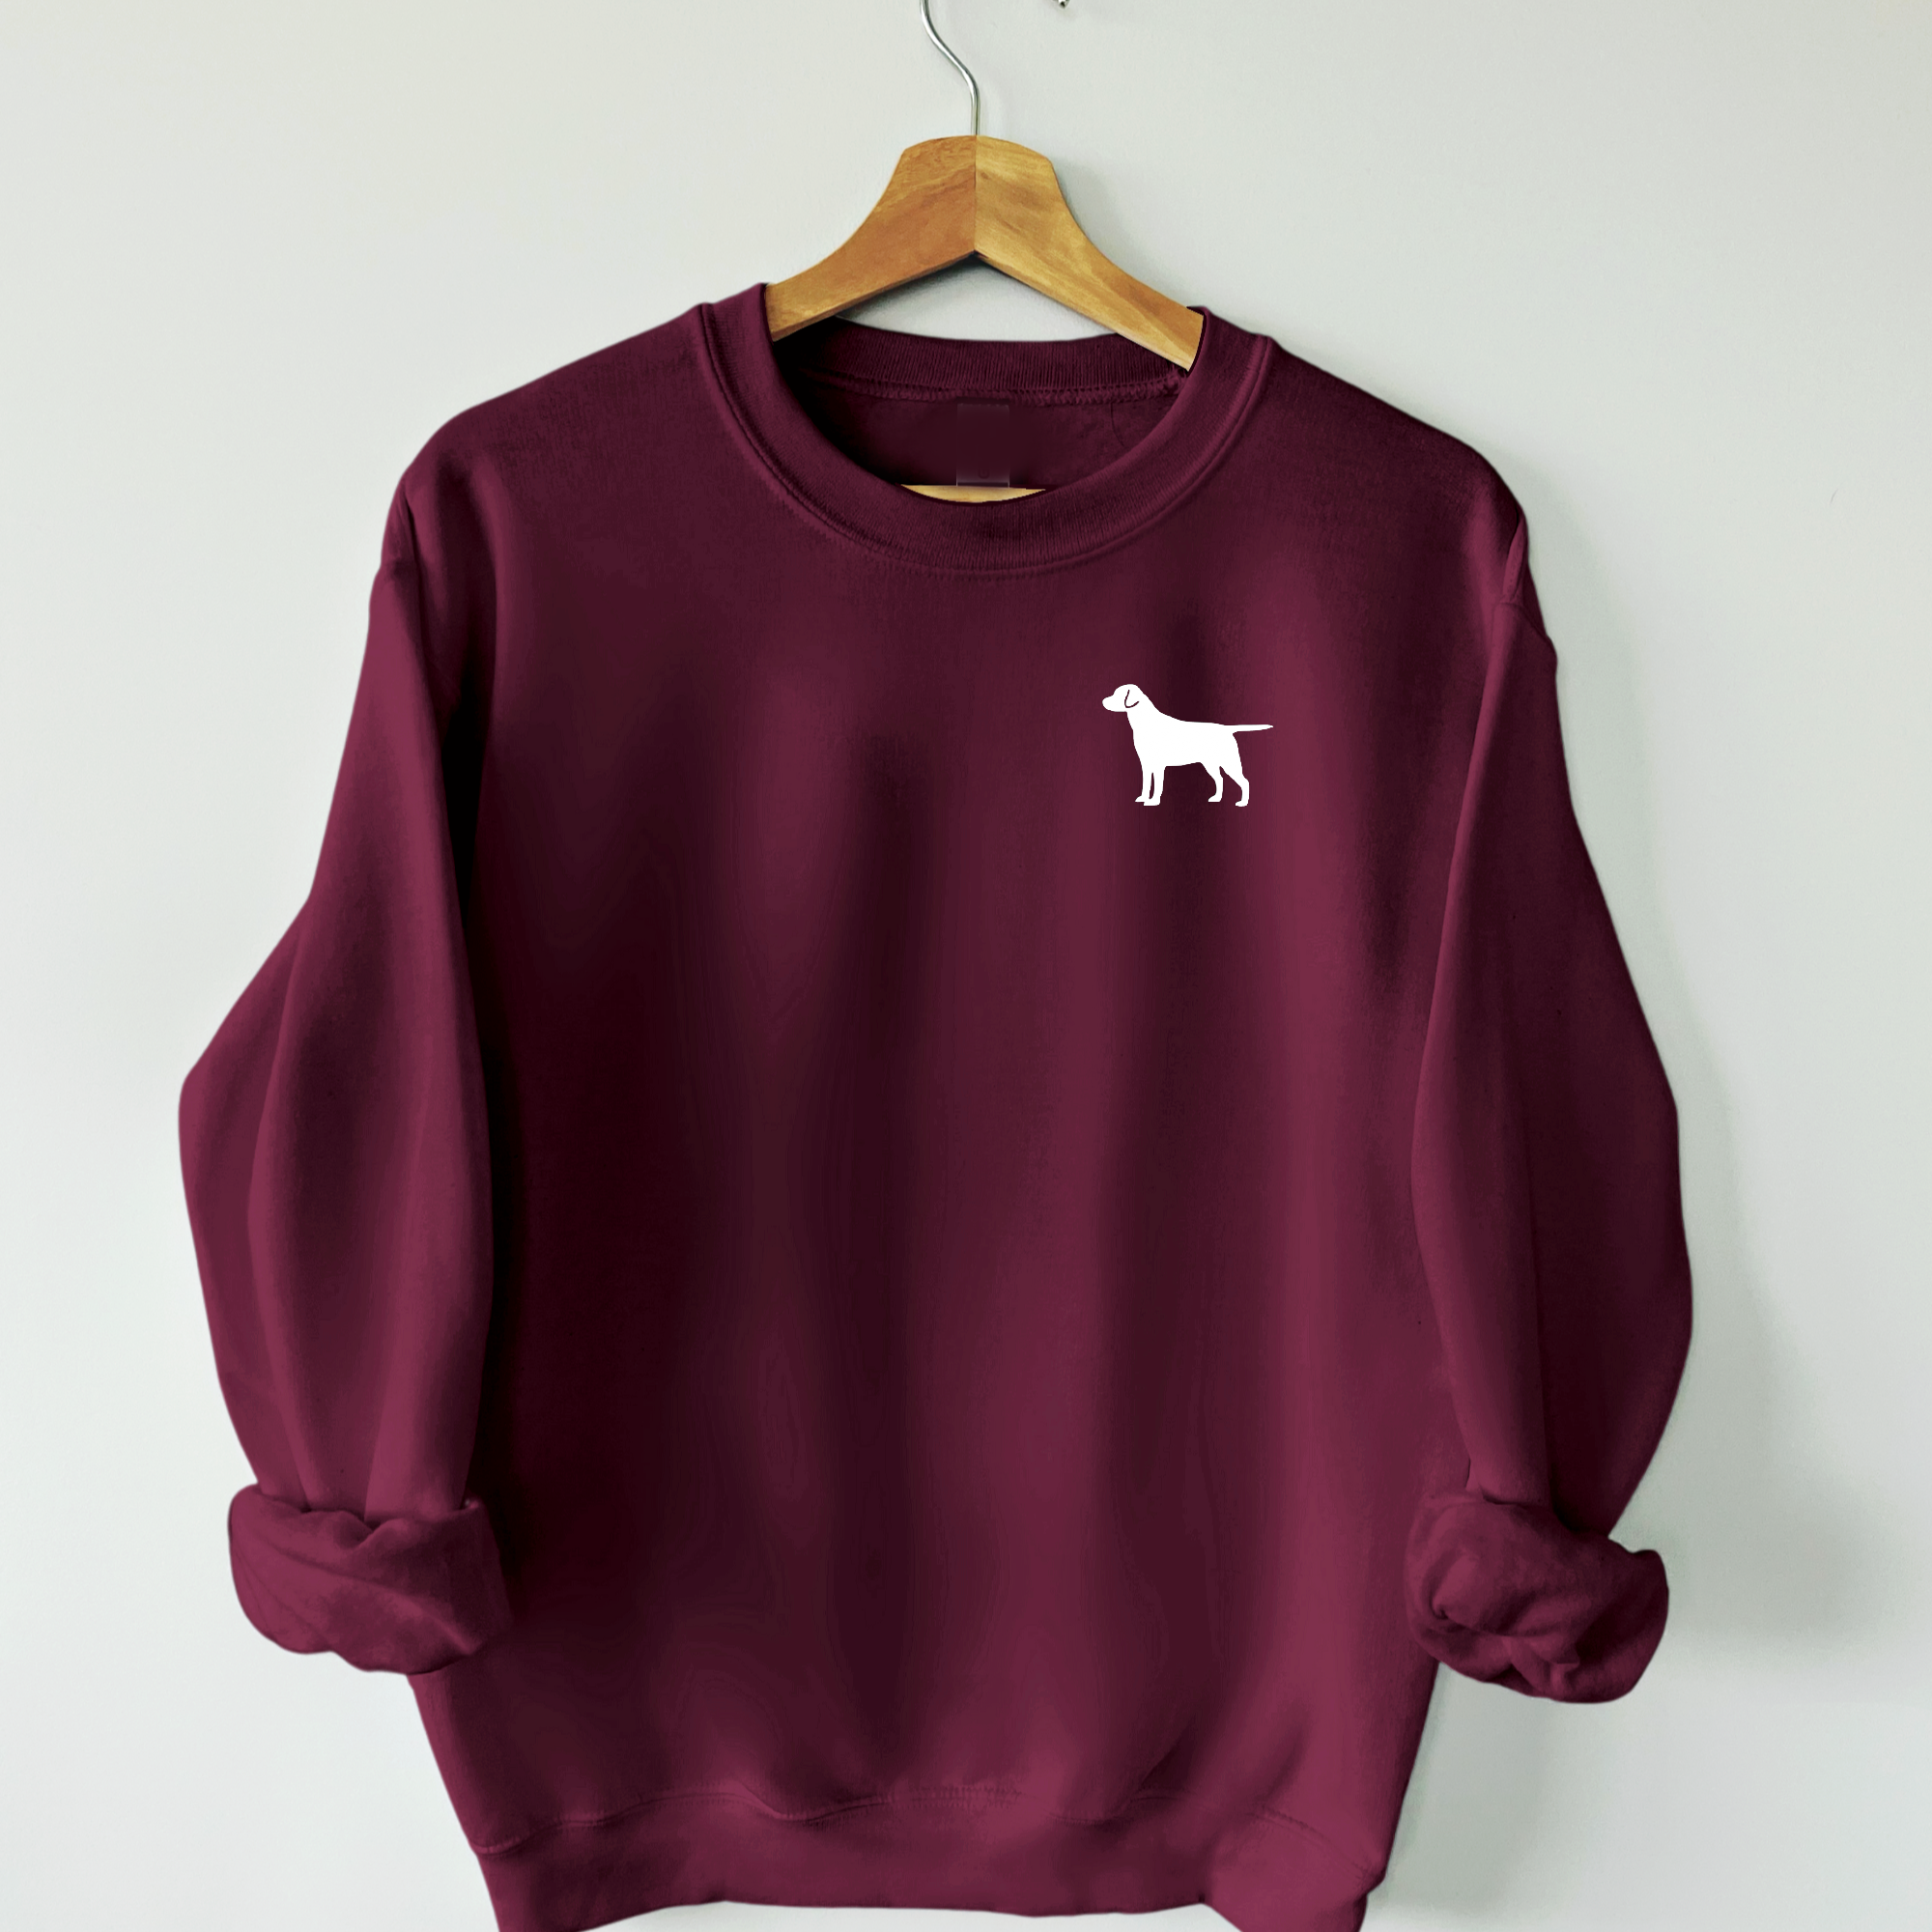 Dog Logo Sweatshirt - Customise with ANY Dog Breed - Unisex Relaxed Fit